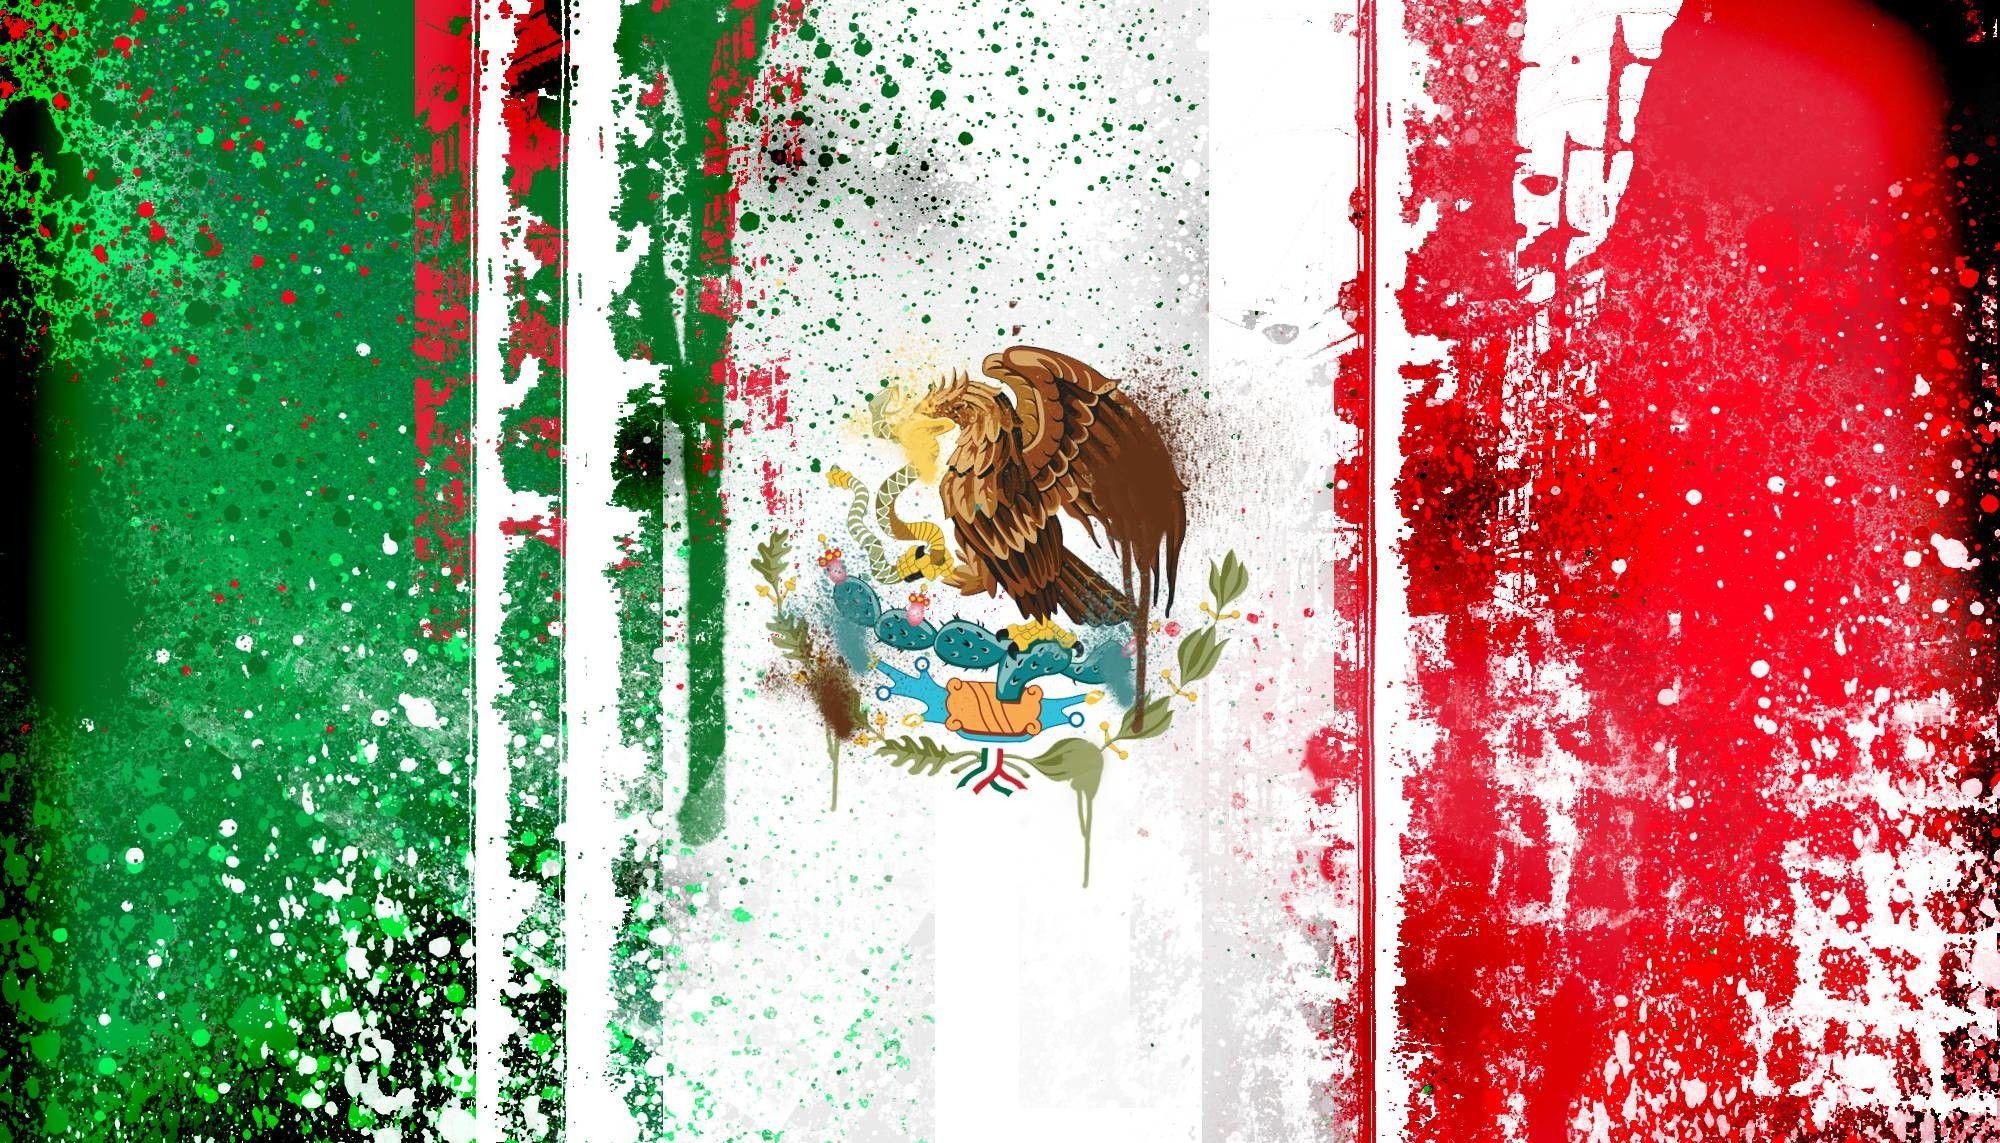 Mexican Fiesta Wallpaper